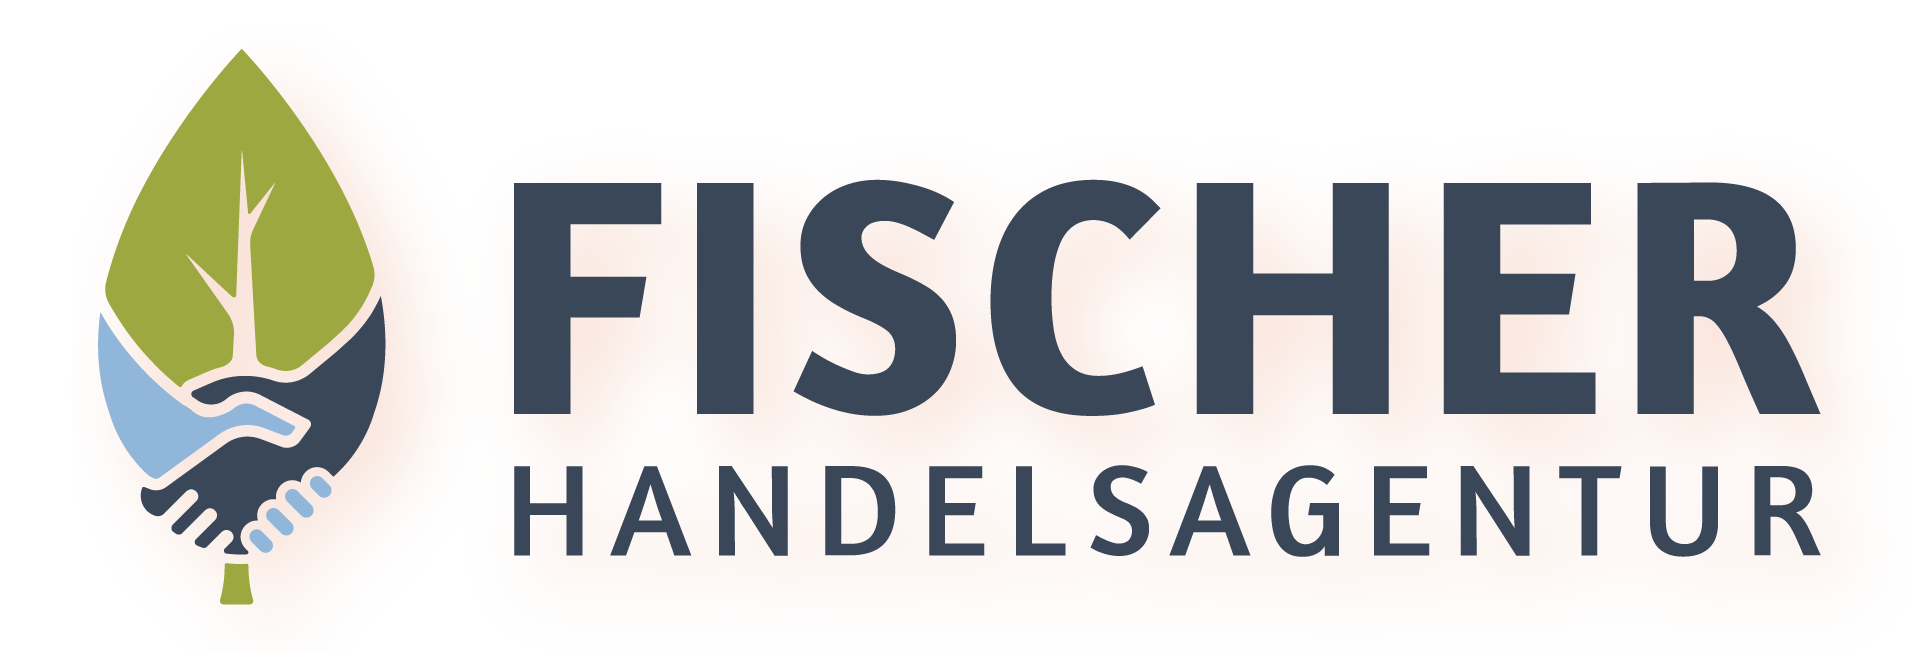 Handelsagentur-Jörg-Fischer-Logo